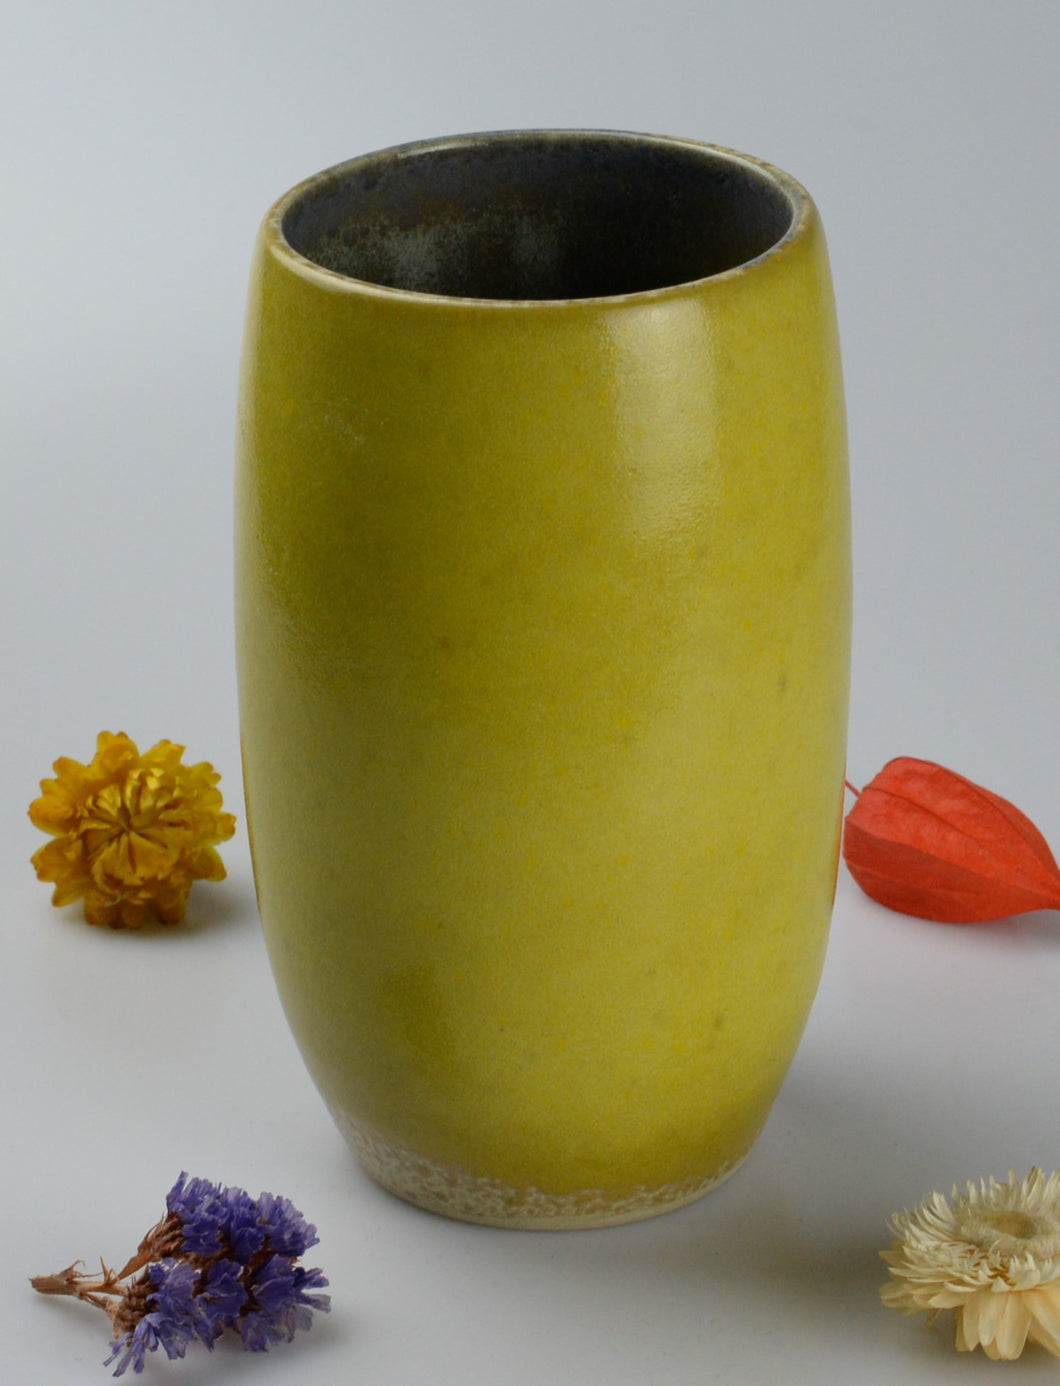 Unique ceramic vase - yellow